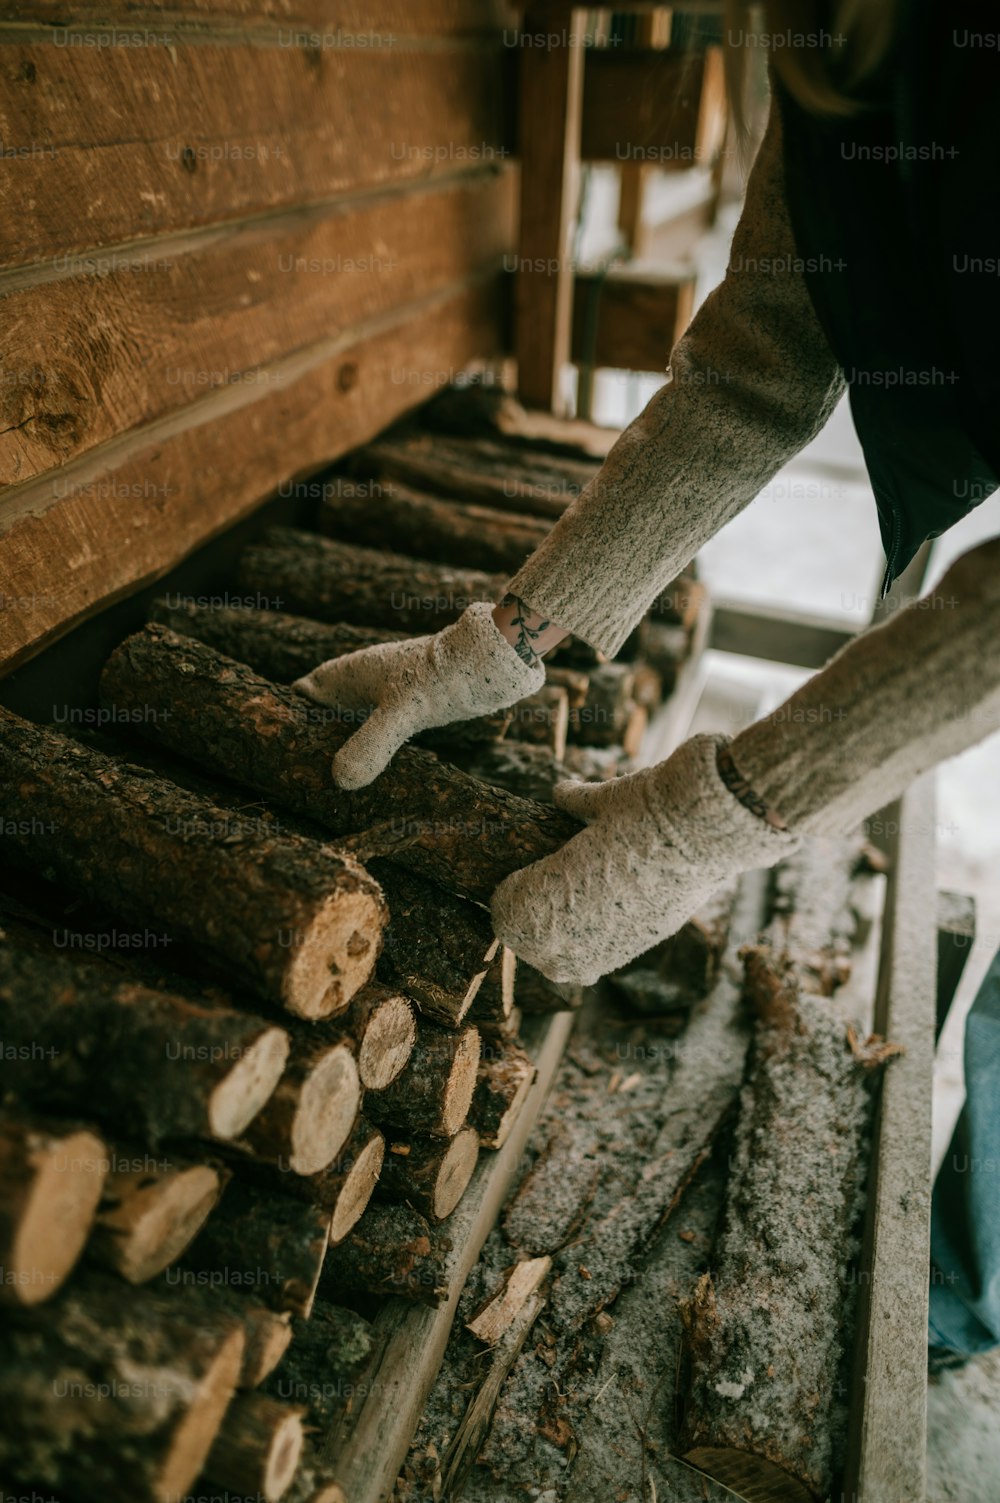 Una persona sosteniendo un par de guantes sobre una pila de troncos